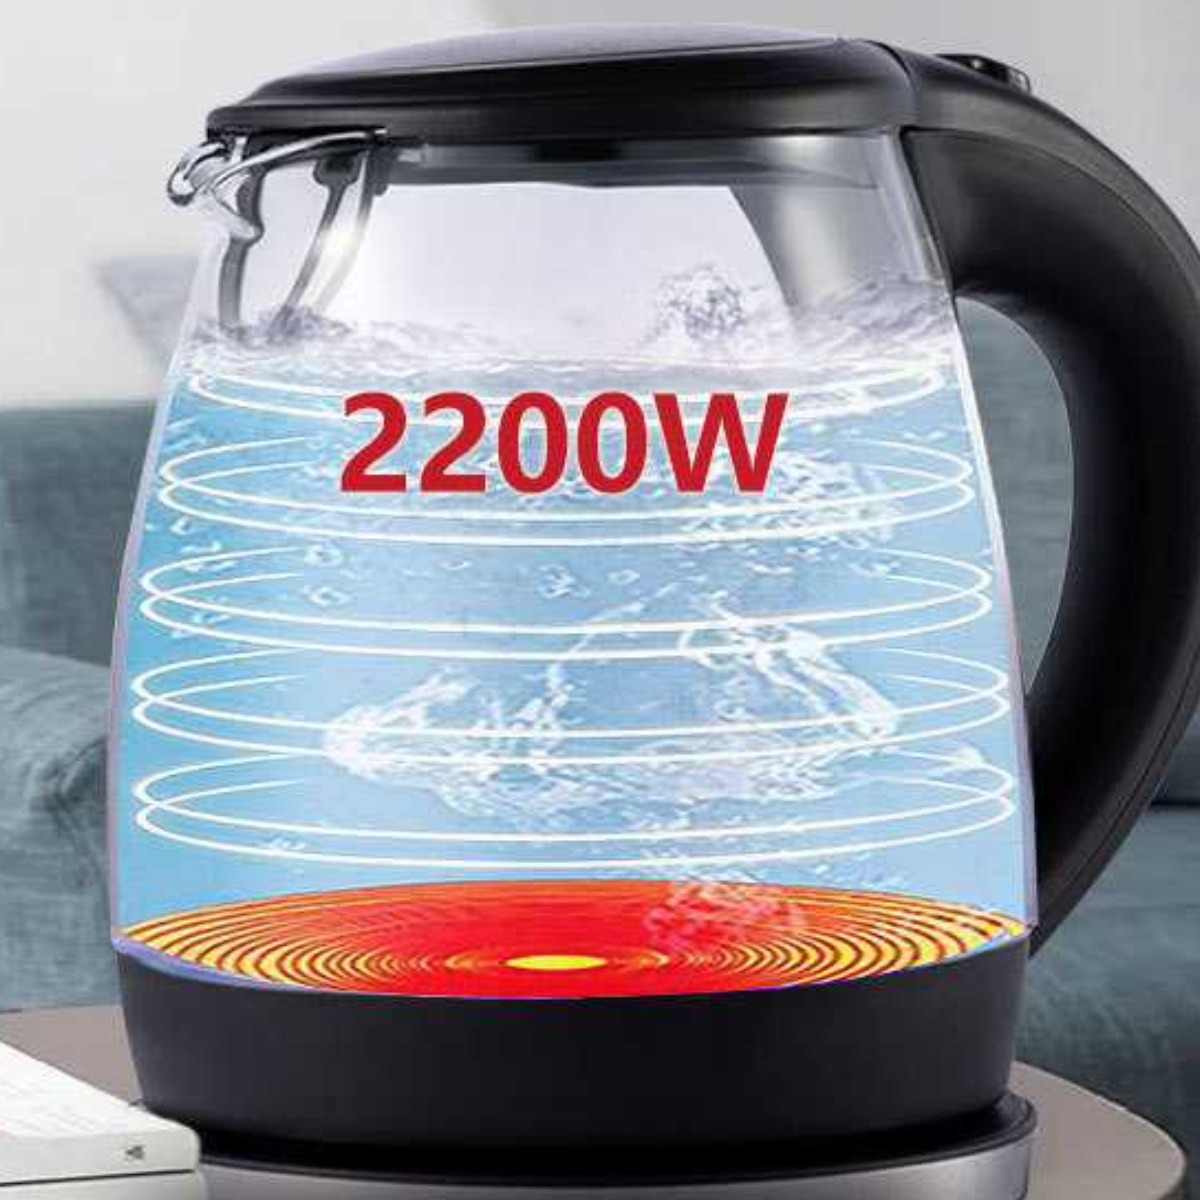 UWOT Blaulicht-Wasserkocher mit 1L Glaskessel Abschaltung: automatischer Schwarz Wasserkocher